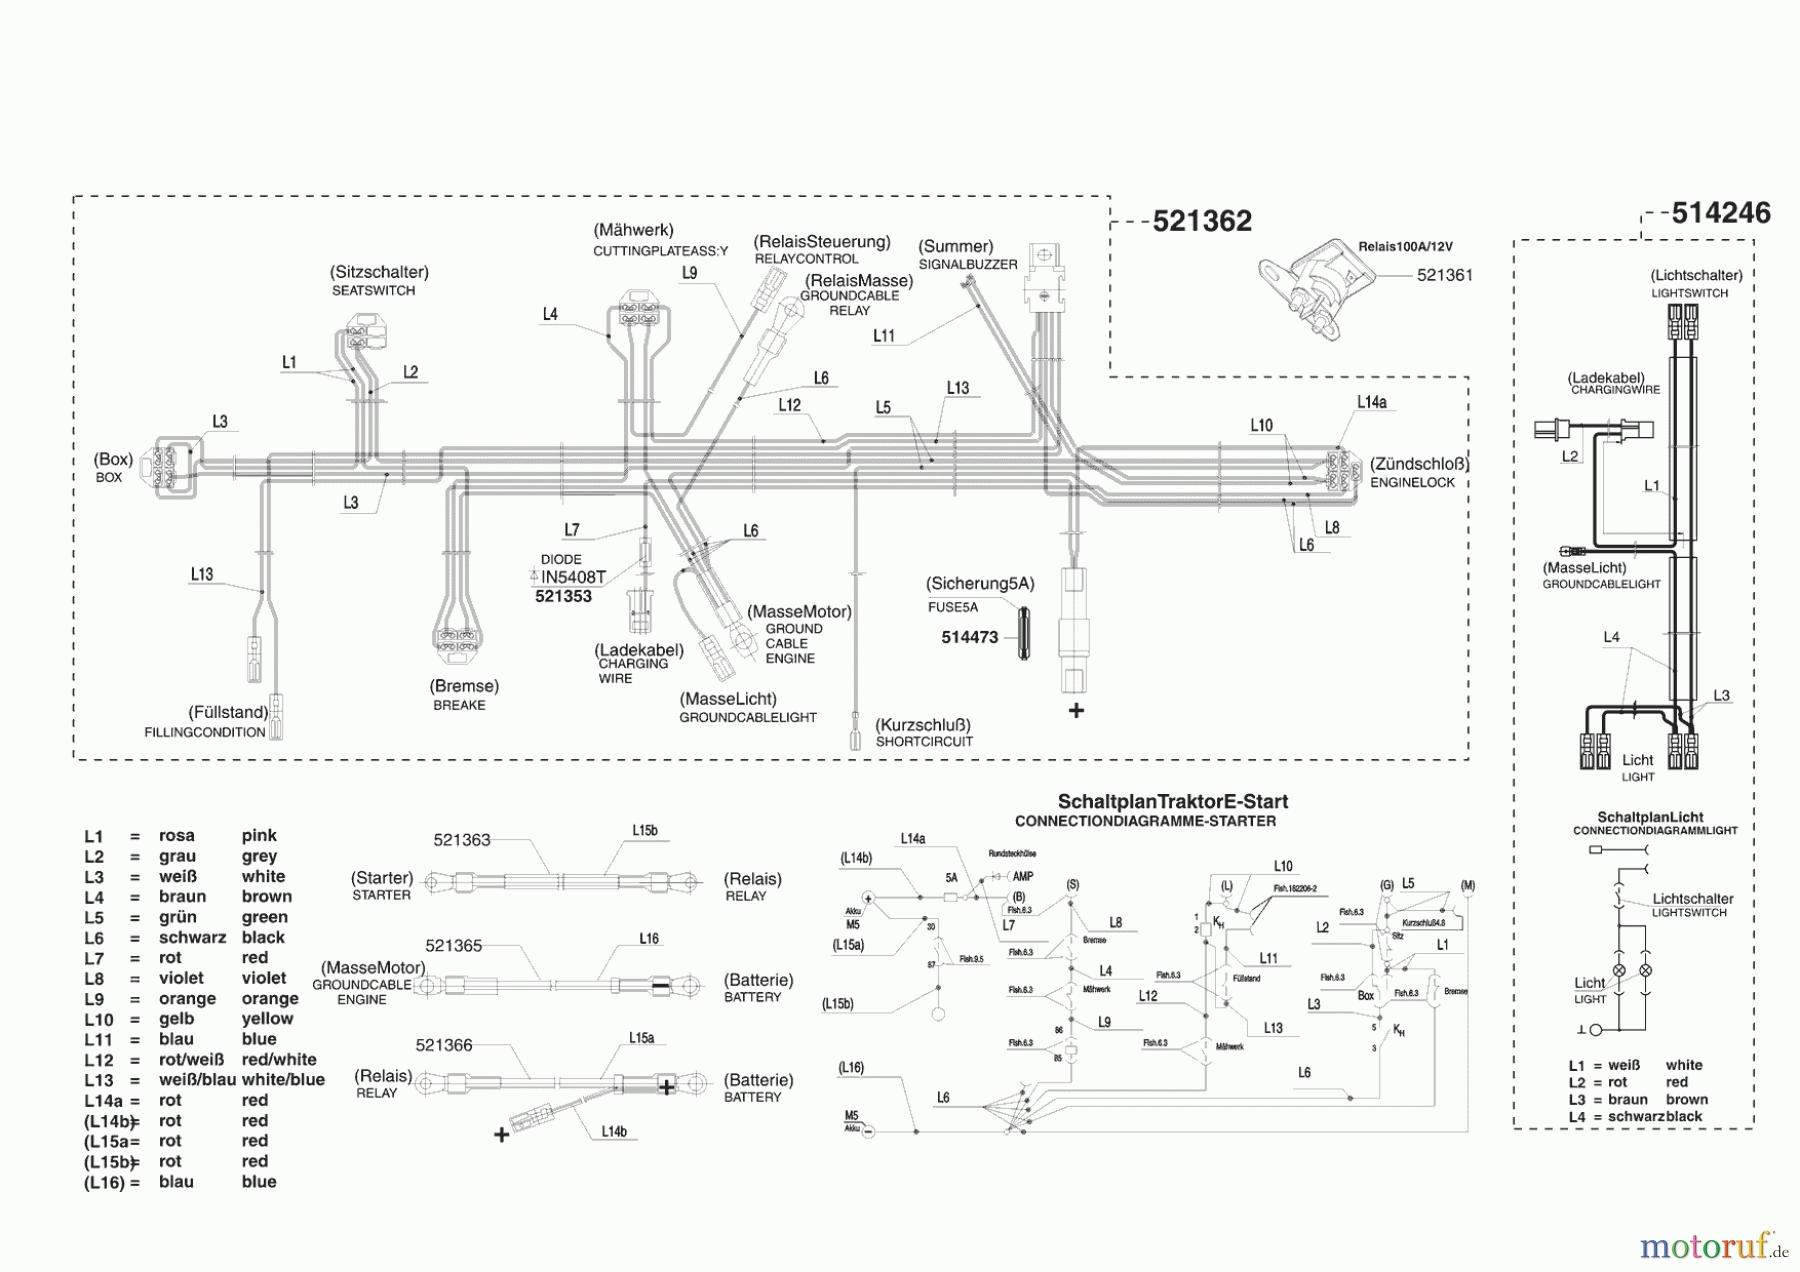  Powerline Gartentechnik Rasentraktor T 13-74 ab 03/2006 Seite 8